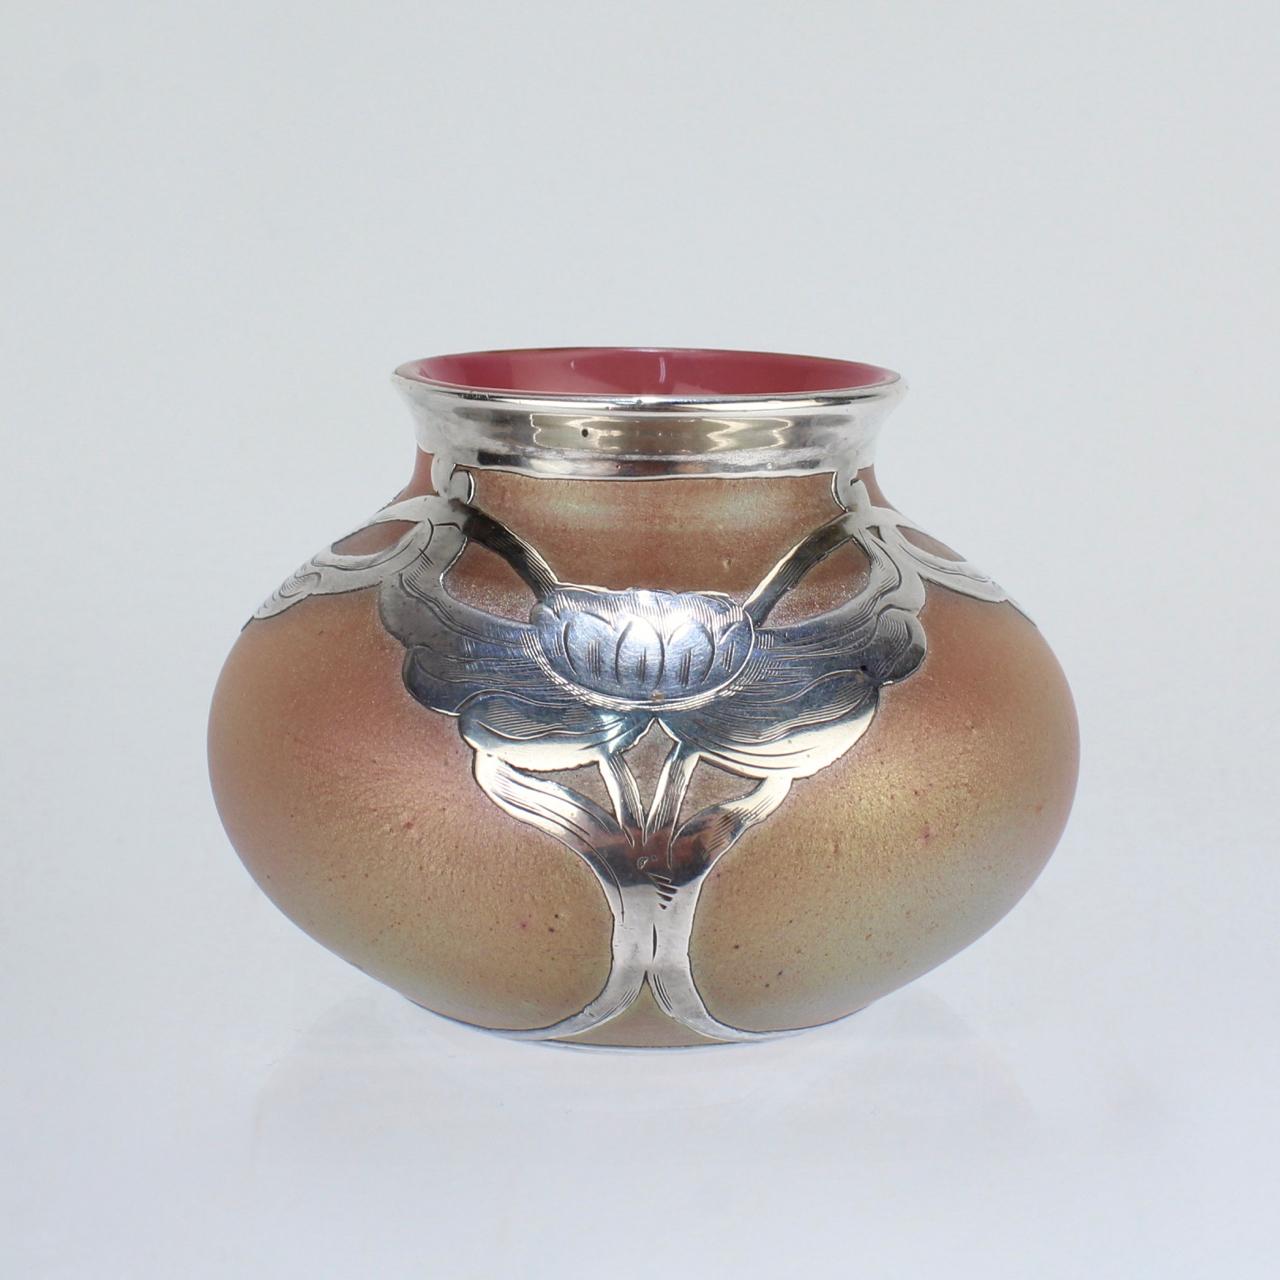 Eine gute, kleine Art Nouveau Periode Loetz Kunst Glas Vase mit dicken Sterling Silber Overlay Dekoration.

Das Glas mit einem Silberiris-Finish und das Silber mit graviertem Dekor.

Das Silber ist am Sockel für La Pierre Mfg. gekennzeichnet.